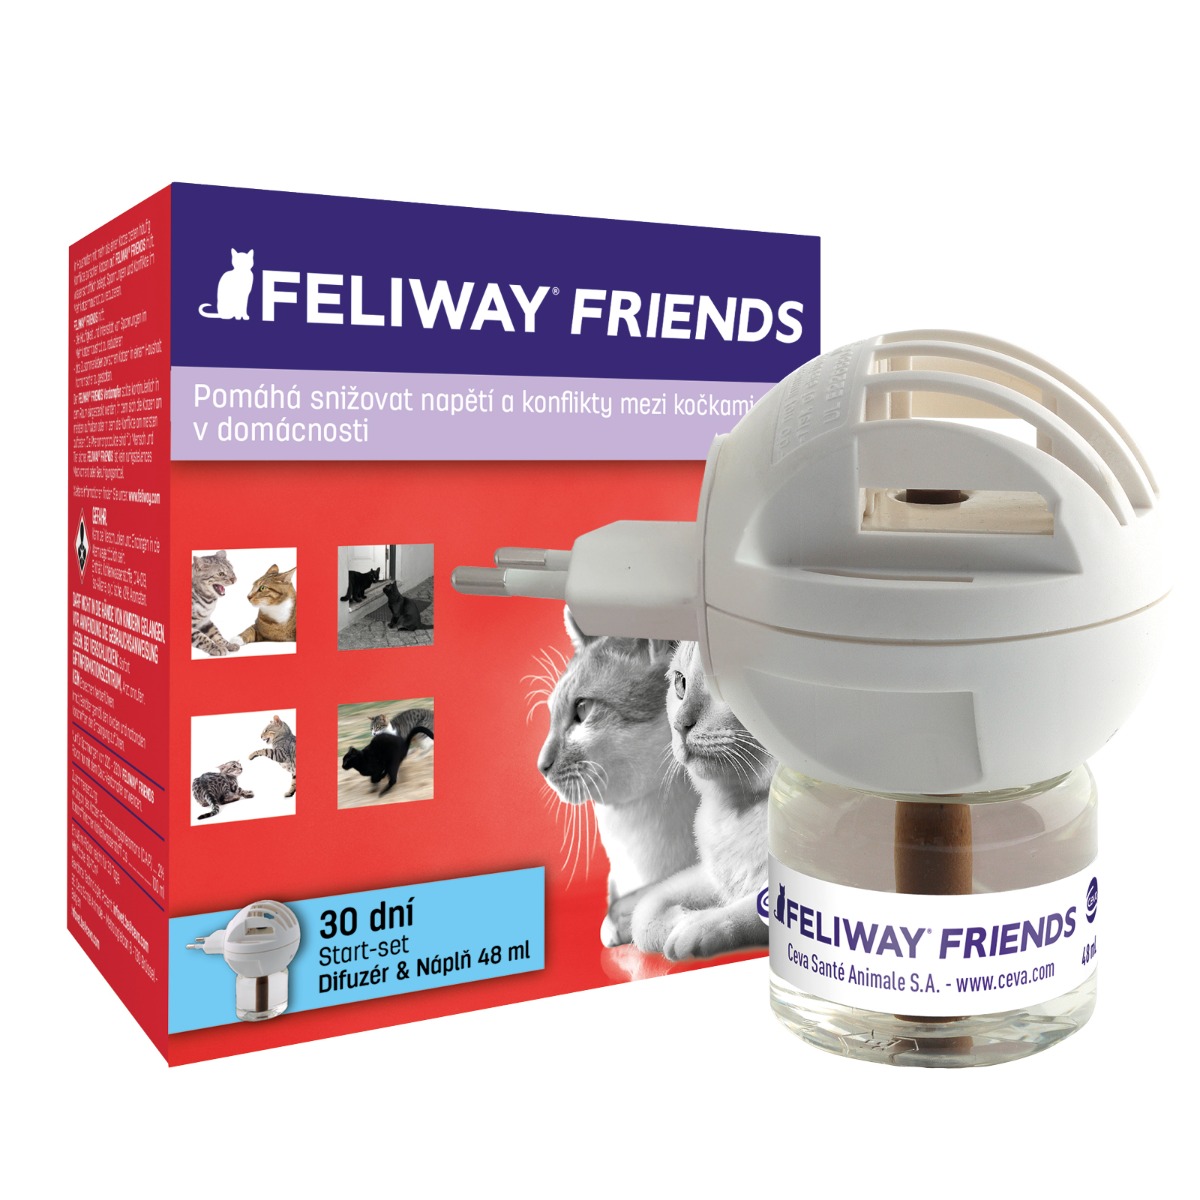 Feliway Friends difuzér a náplň pro kočky 48 ml Feliway